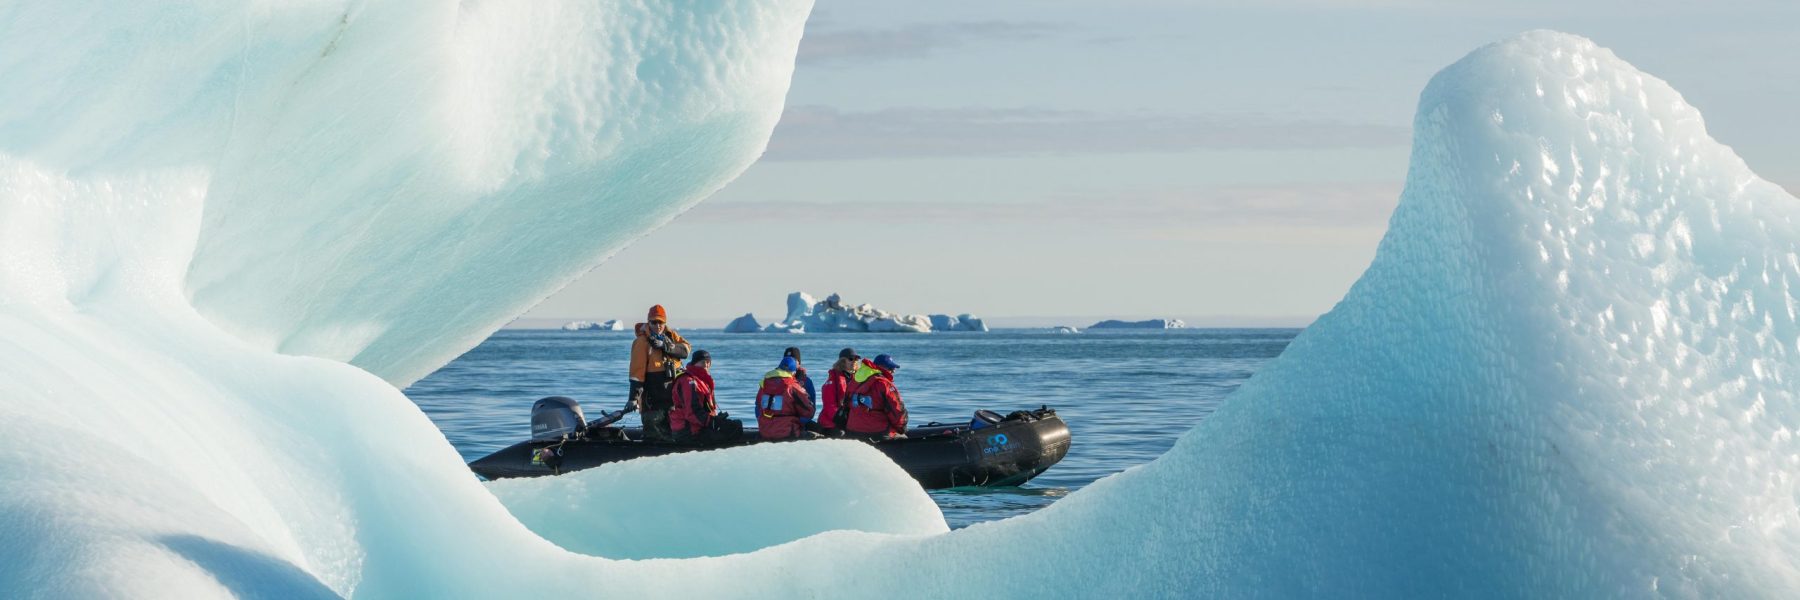 Schlauchboot mit Passagieren von One Ocean Expeditions vor Croker Gletscher, Croker Bay, Devon Island, Nunavut, Arktis, Kanada